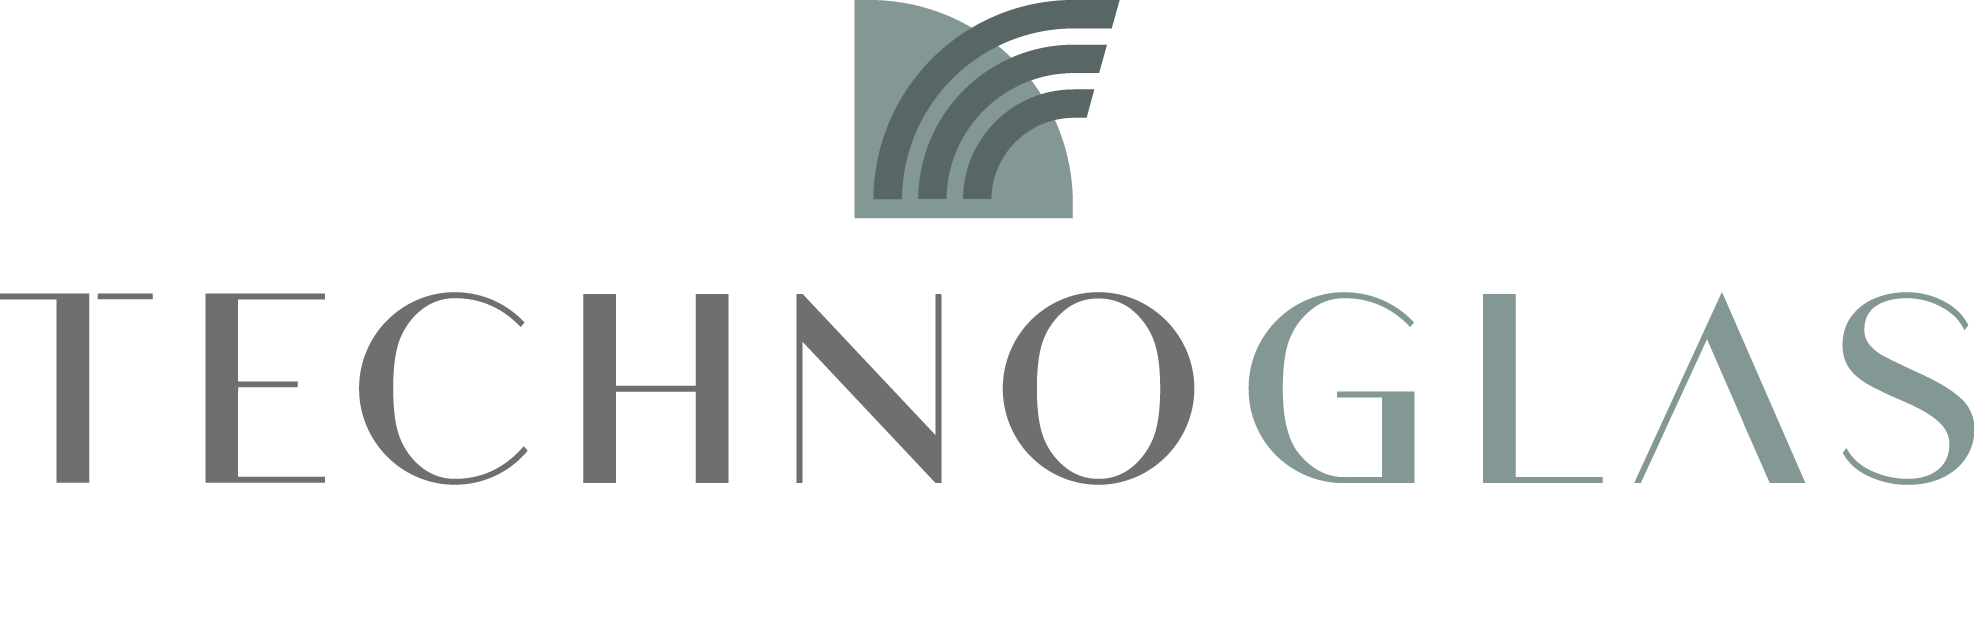 logo technoglas